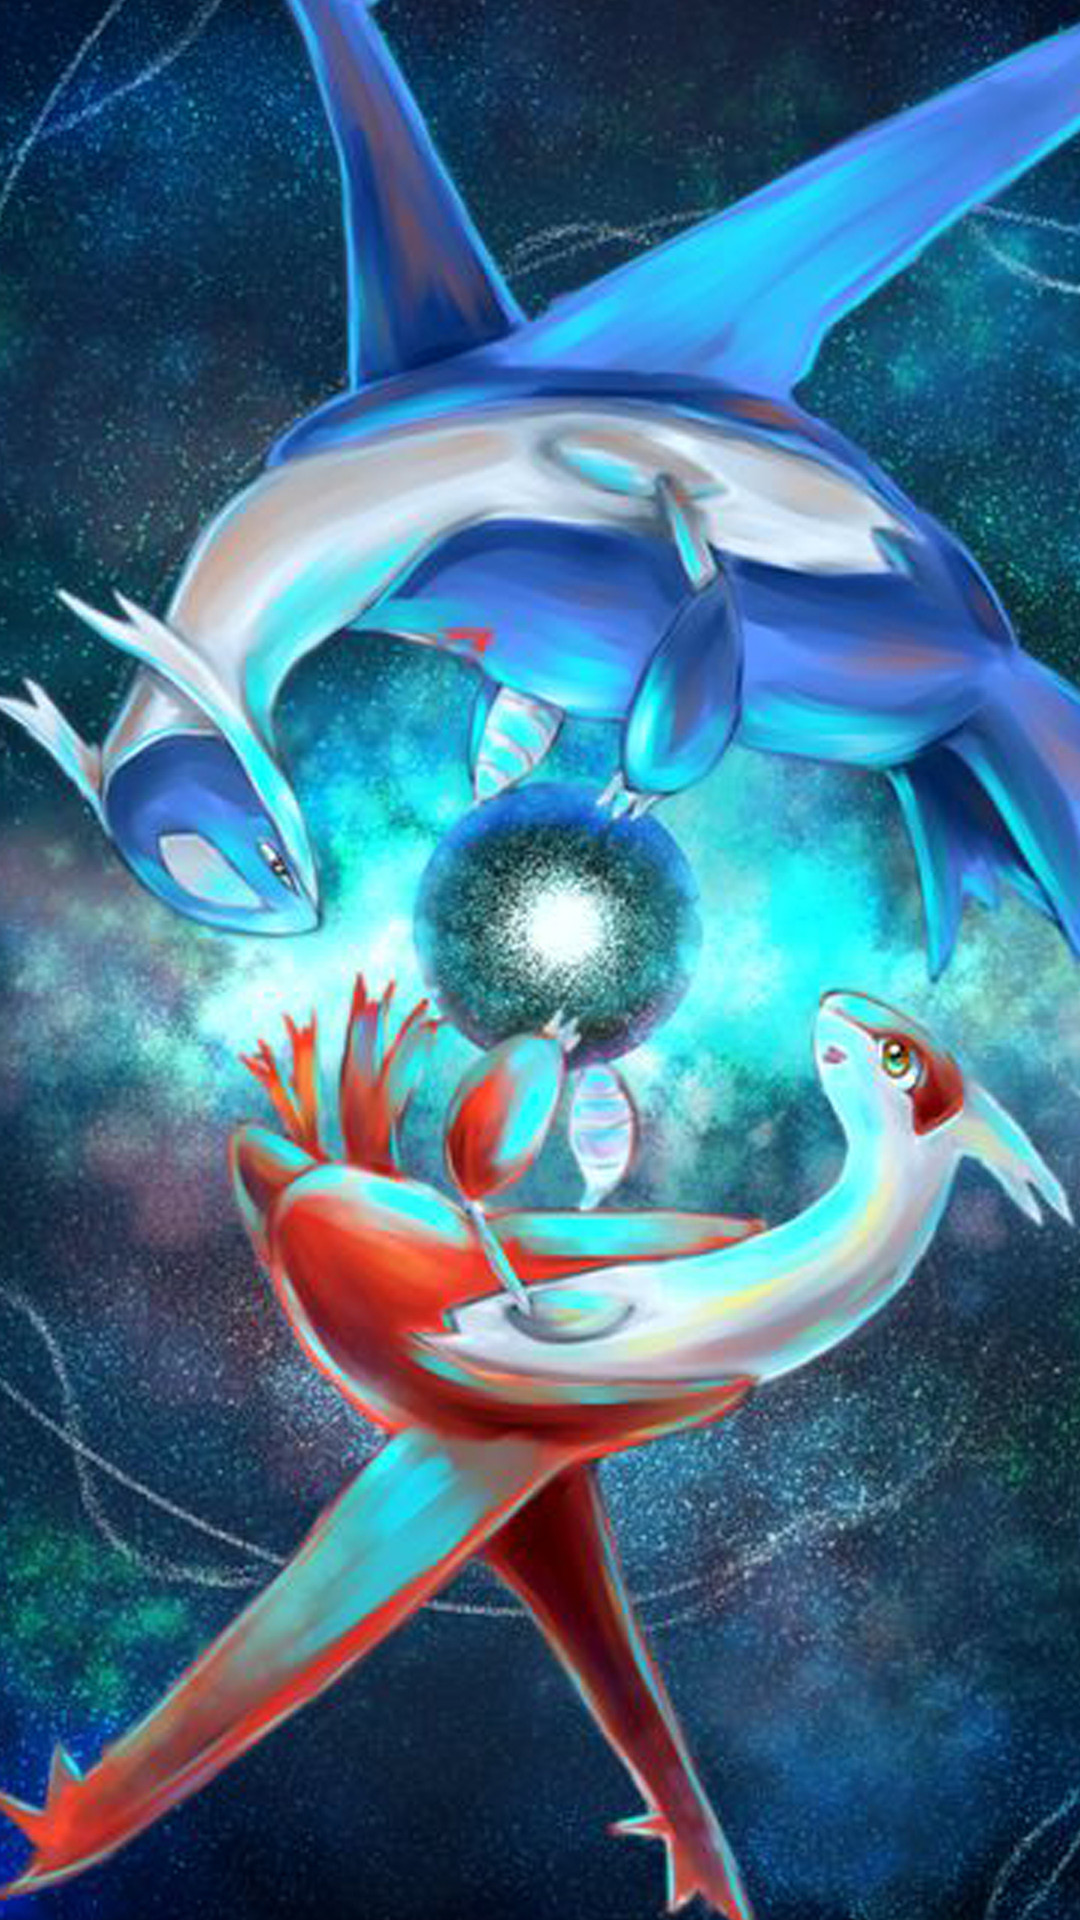 fond d'écran de téléphone pokemon,dauphin,mammifère marin,biologie marine,illustration,bleu électrique